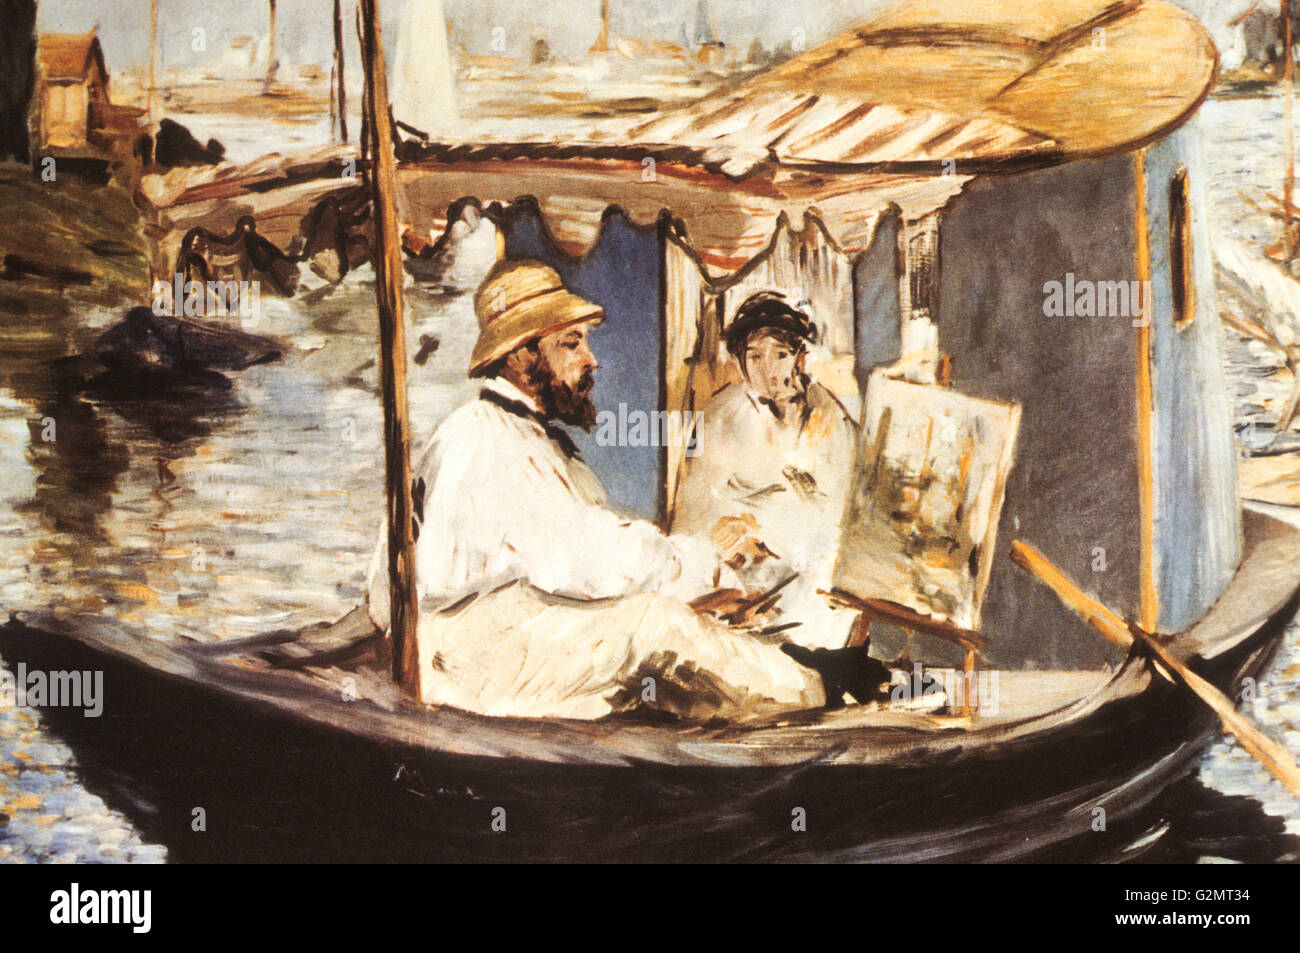 monet sur son bateau,edouard manet,1874 Stock Photo